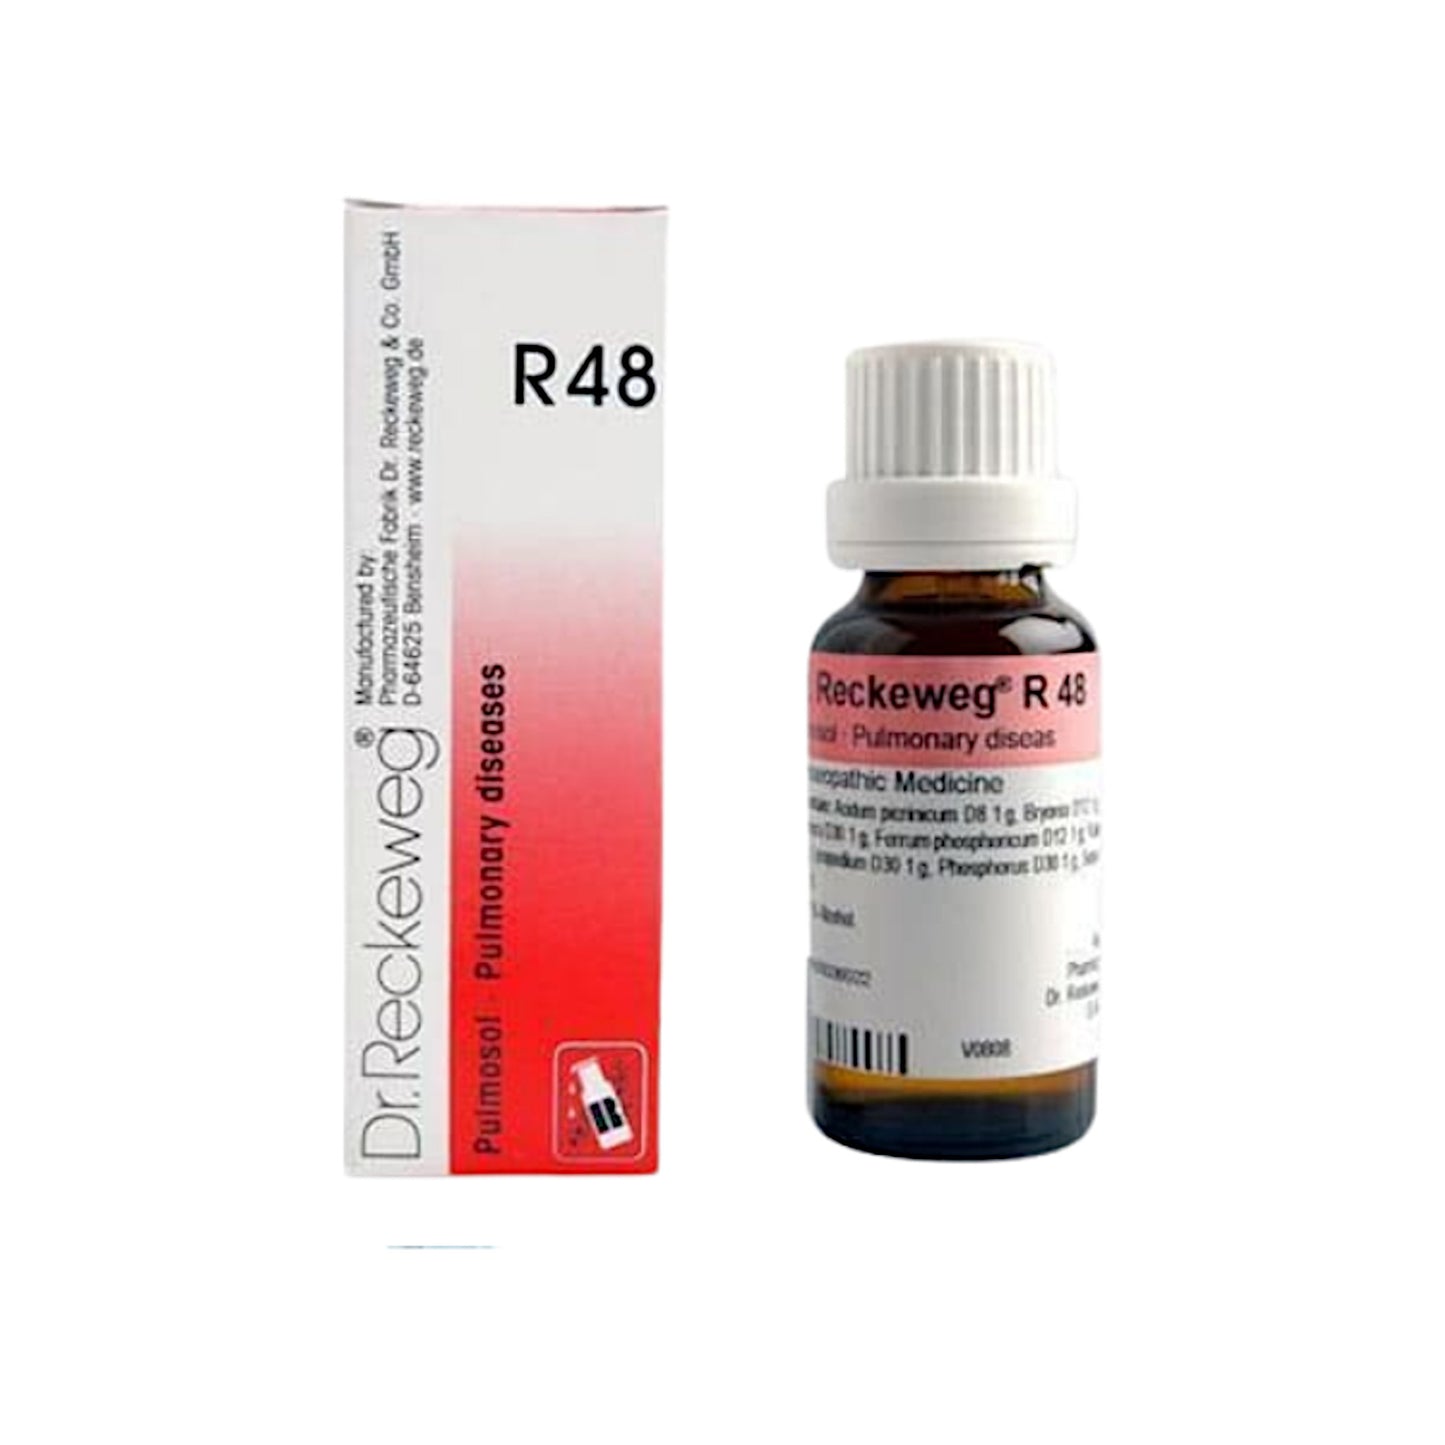 Dr. Reckeweg R48 - Pulmosol Pulmonary Drops 22 ml